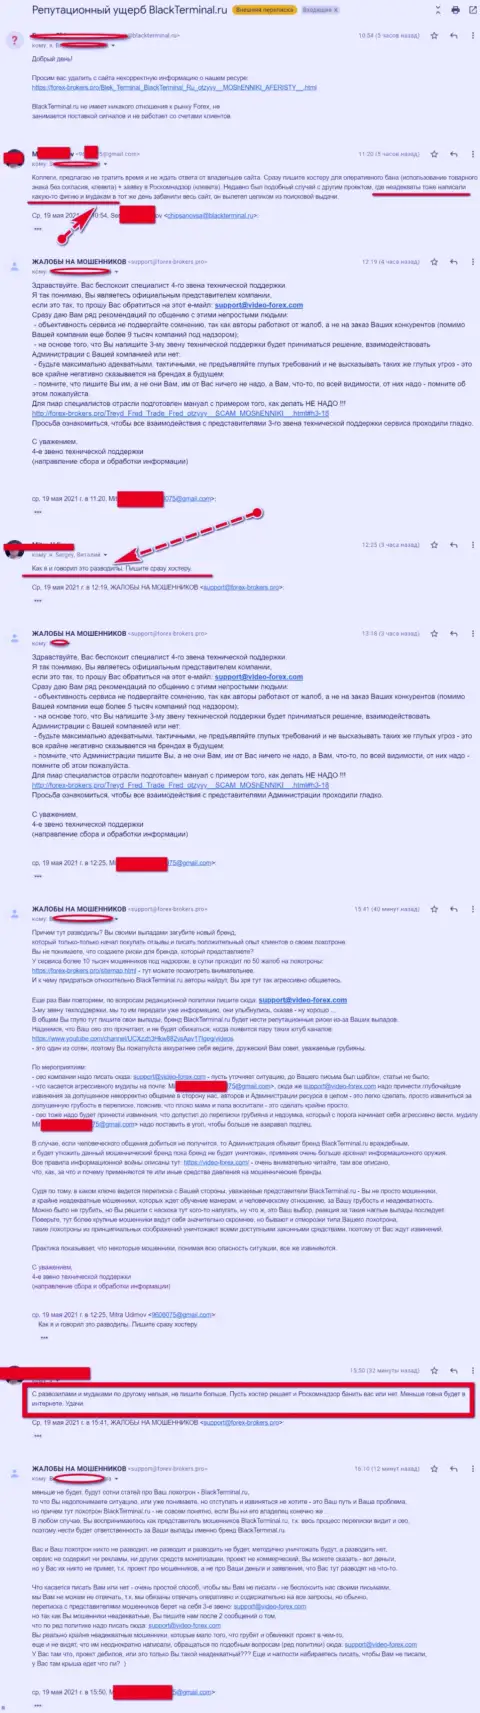 Переписка Администрации сайта, с отзывами о BlackTerminal Ru, с представителями указанного неправомерно действующего онлайн сервиса